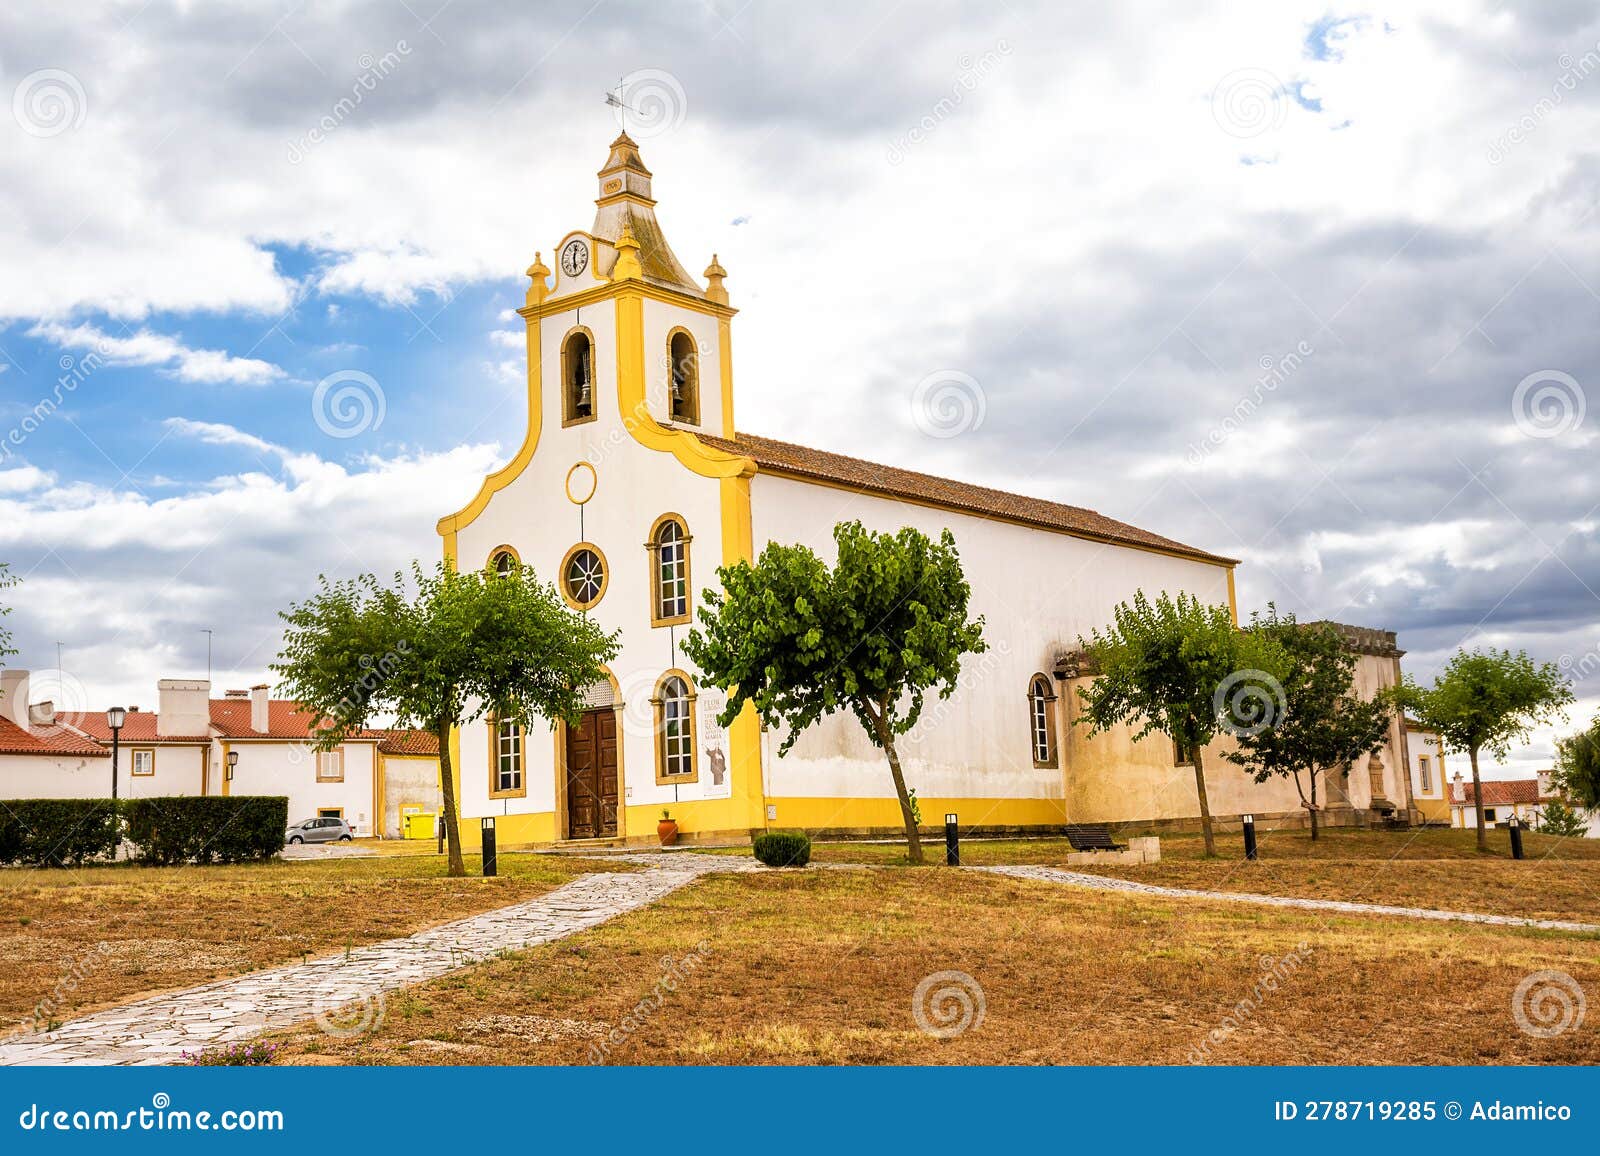 small church in the portuguese village of flor da rosa